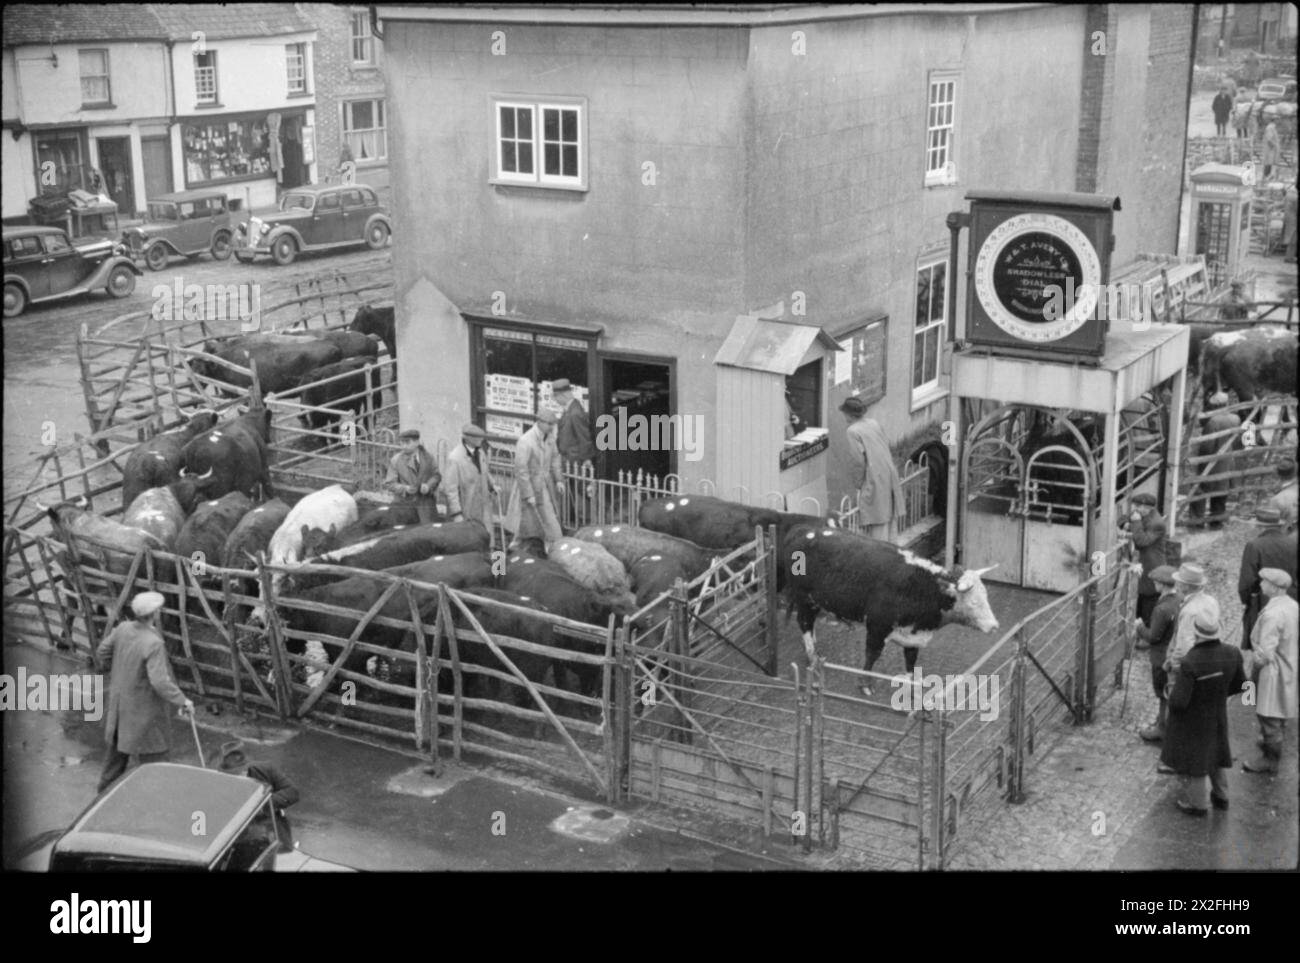 AUTOMNE DANS UNE FERME ANGLAISE : AGRICULTURE IN BRITAIN, 1941 - les bovins sont pesés sur le pont-bascule de Thame Market. Ils sont ensuite inspectés par des classificateurs qui décident si les bovins sont gras ou maigres. Les voitures peuvent être vues garées en arrière-plan Banque D'Images